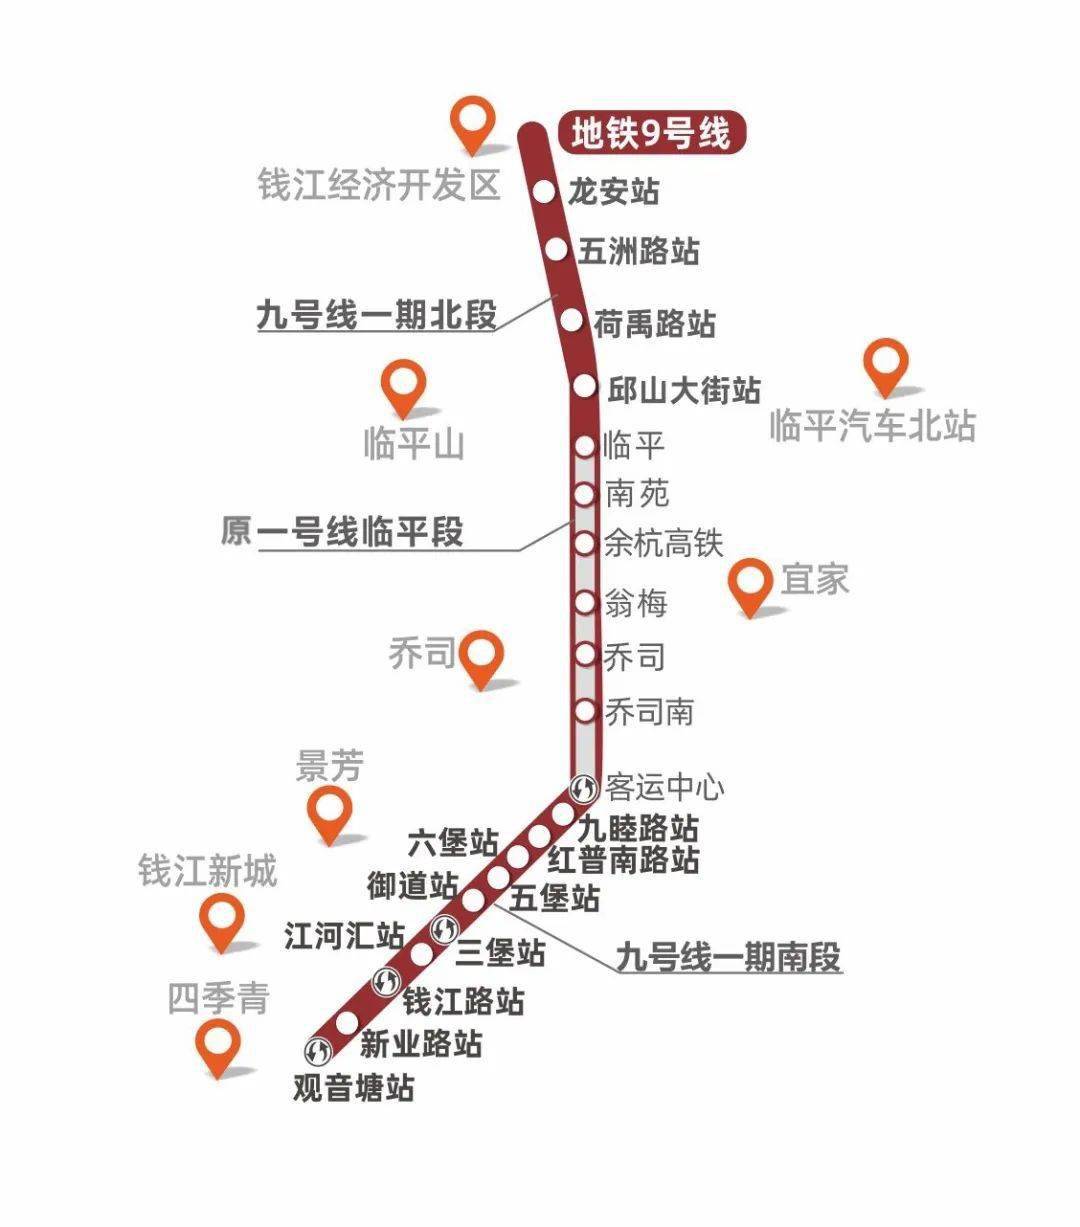 消息杭州地铁9号线开通将与多条地铁线路换乘